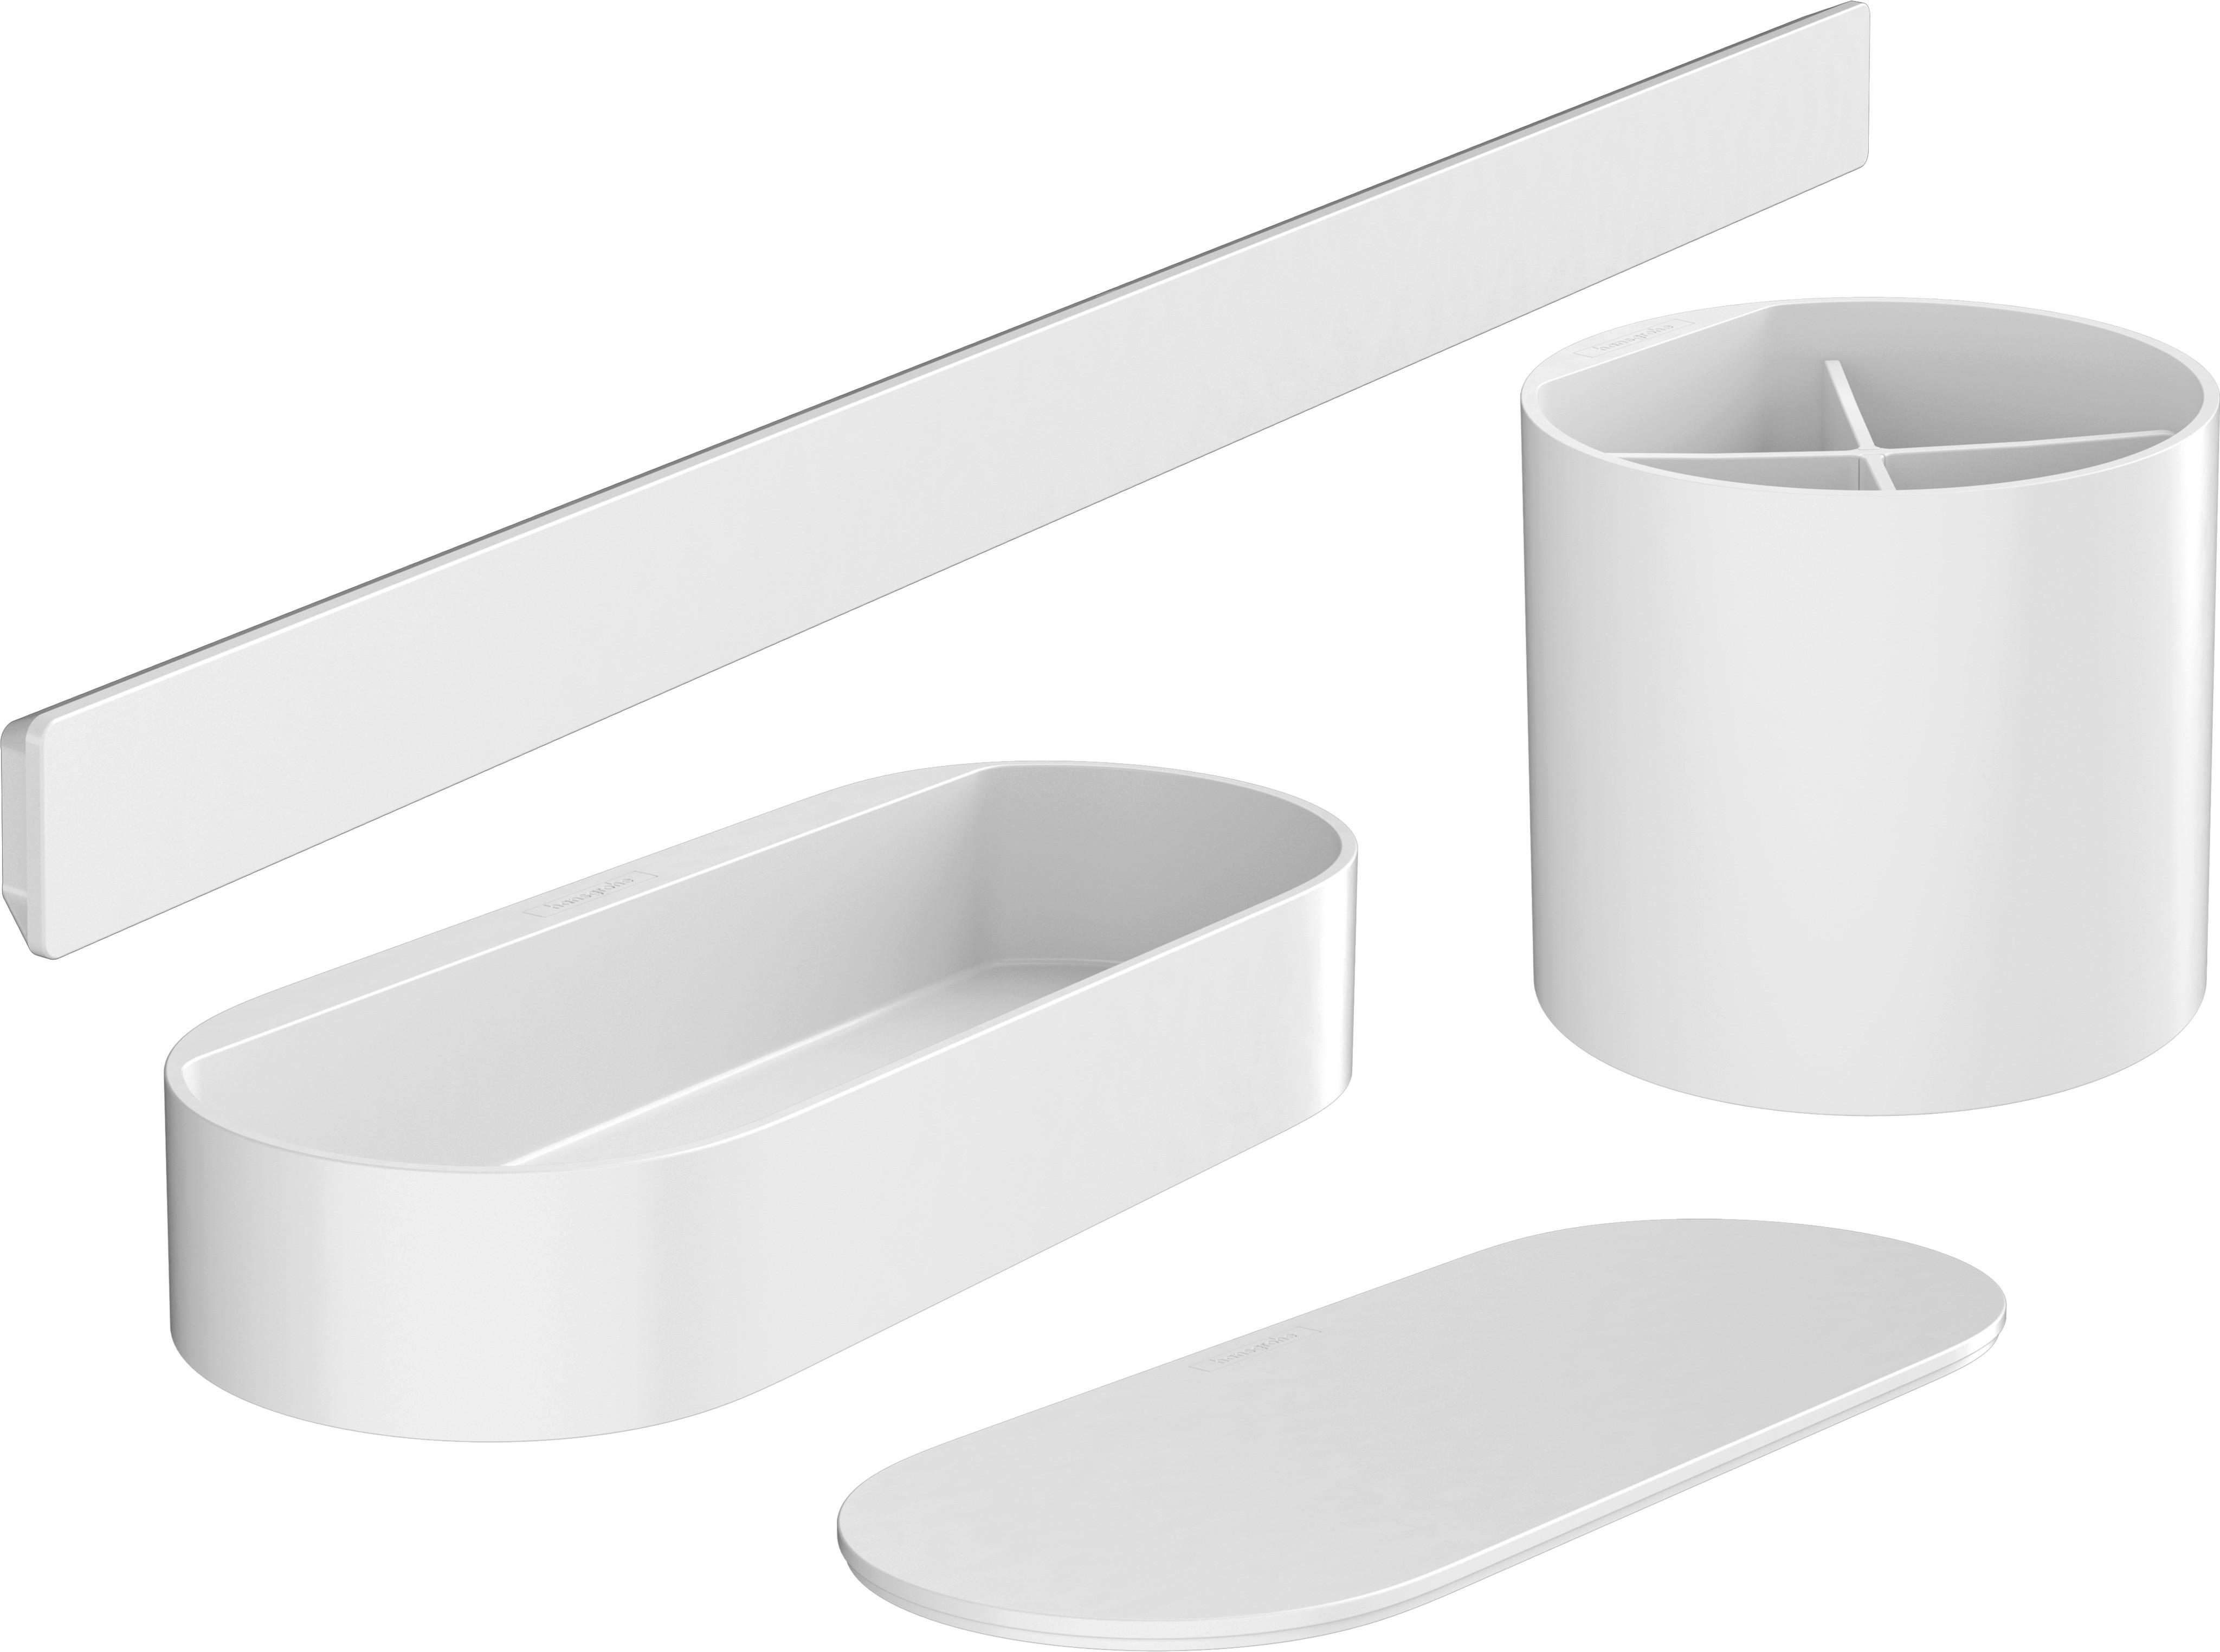 Badezimmer-Set aus Kunststoff in Weiß